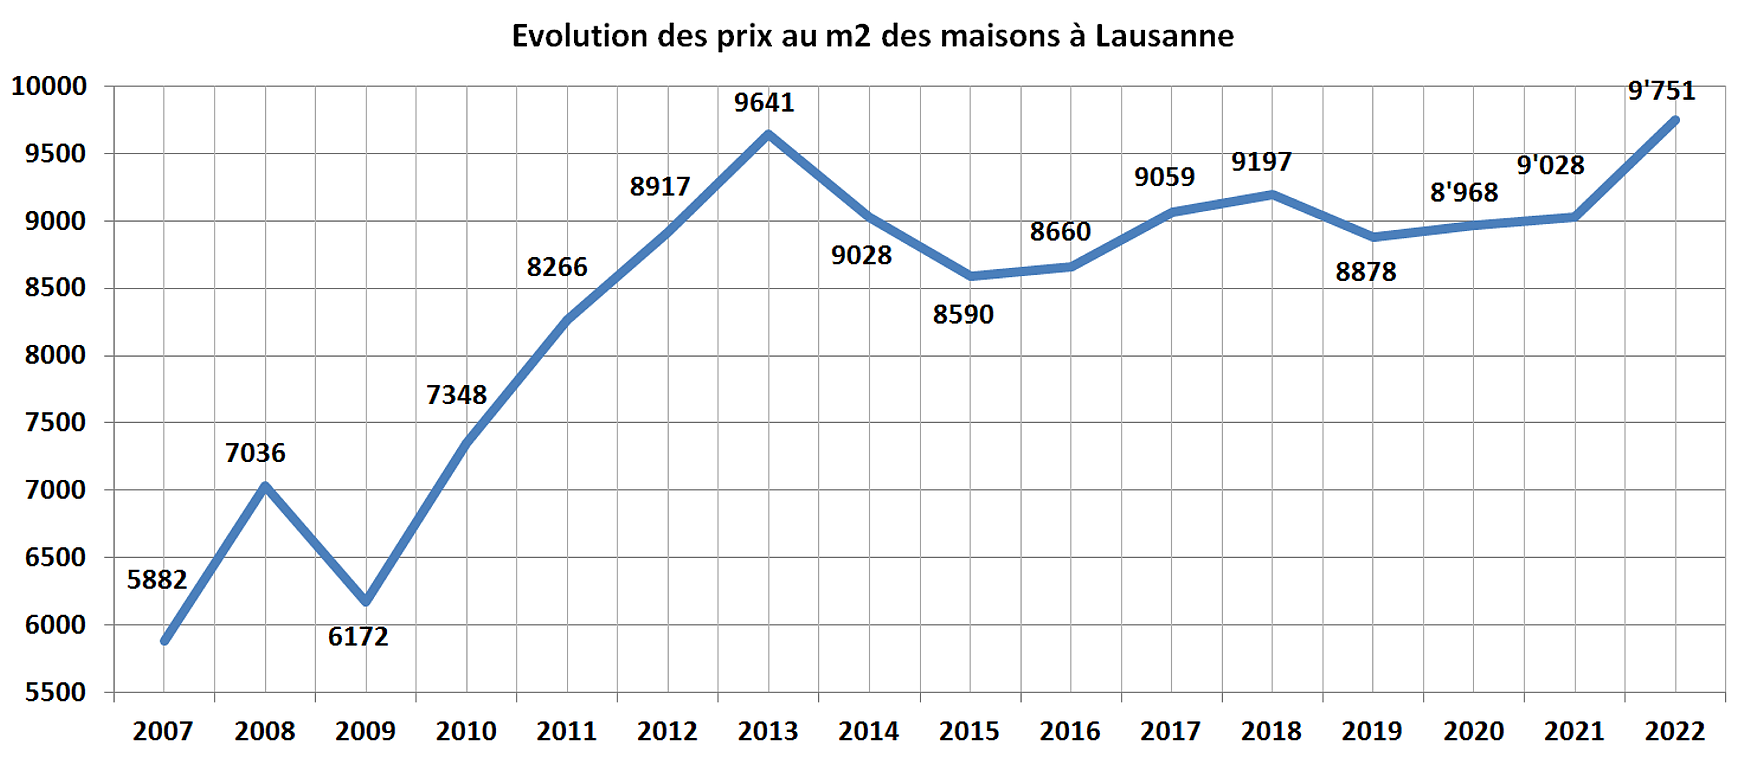 evolution prix m2 maison lausanne 2022